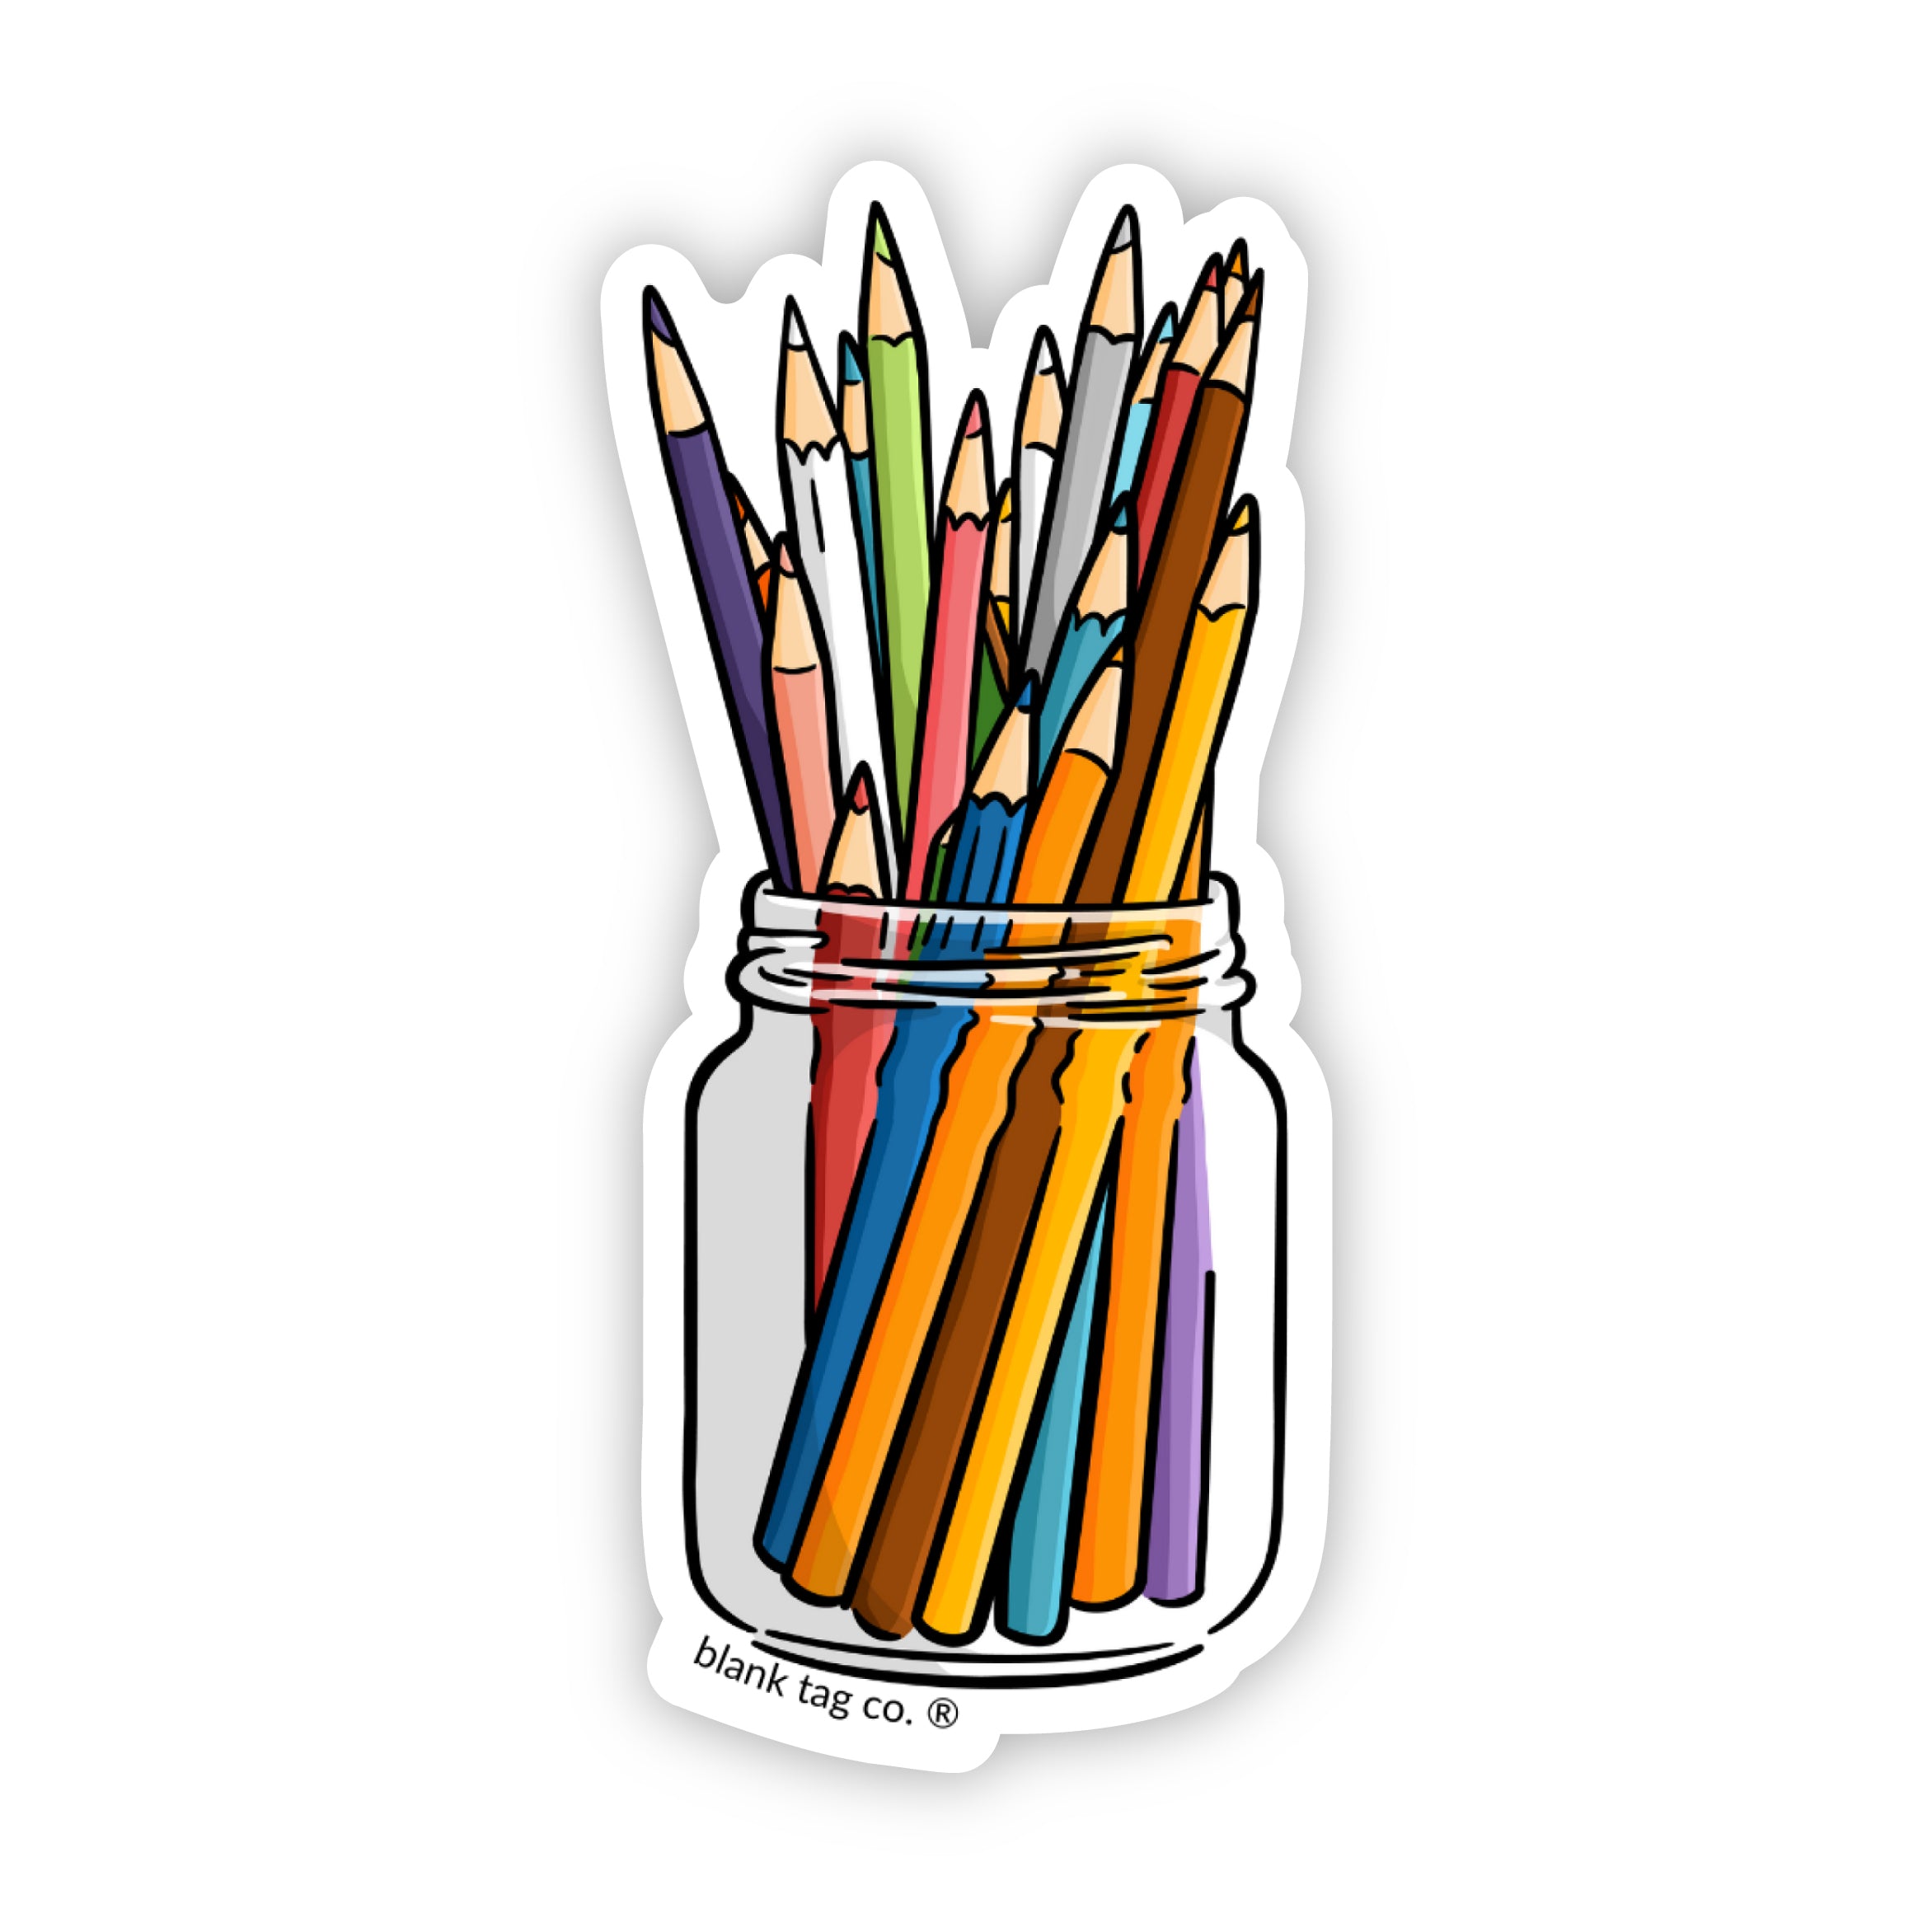 The Colored Pencils Sticker